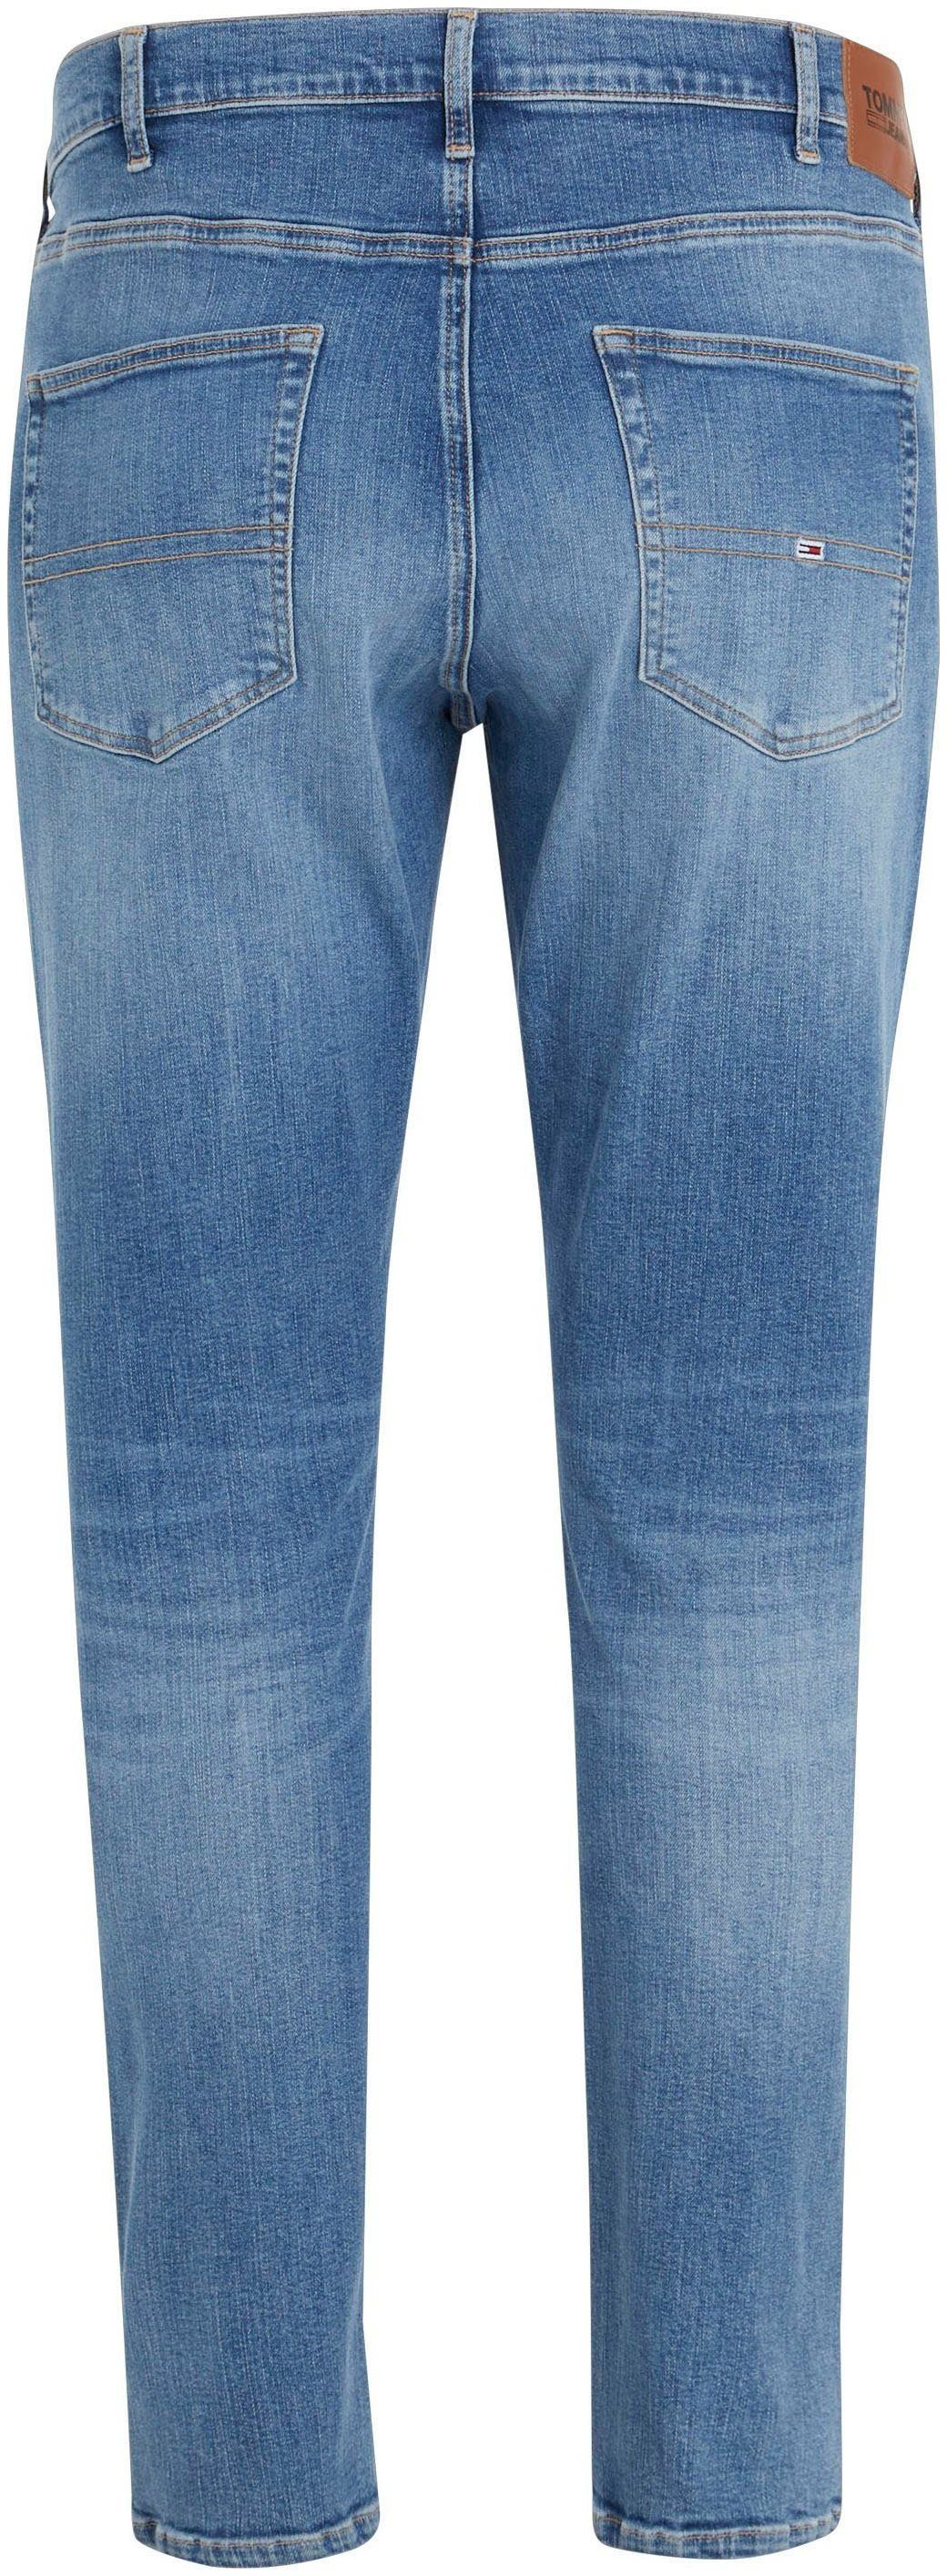 medium PLUS Nieten Jeans Slim-fit-Jeans denim SCANTON Tommy Jeans CE mit Plus Tommy